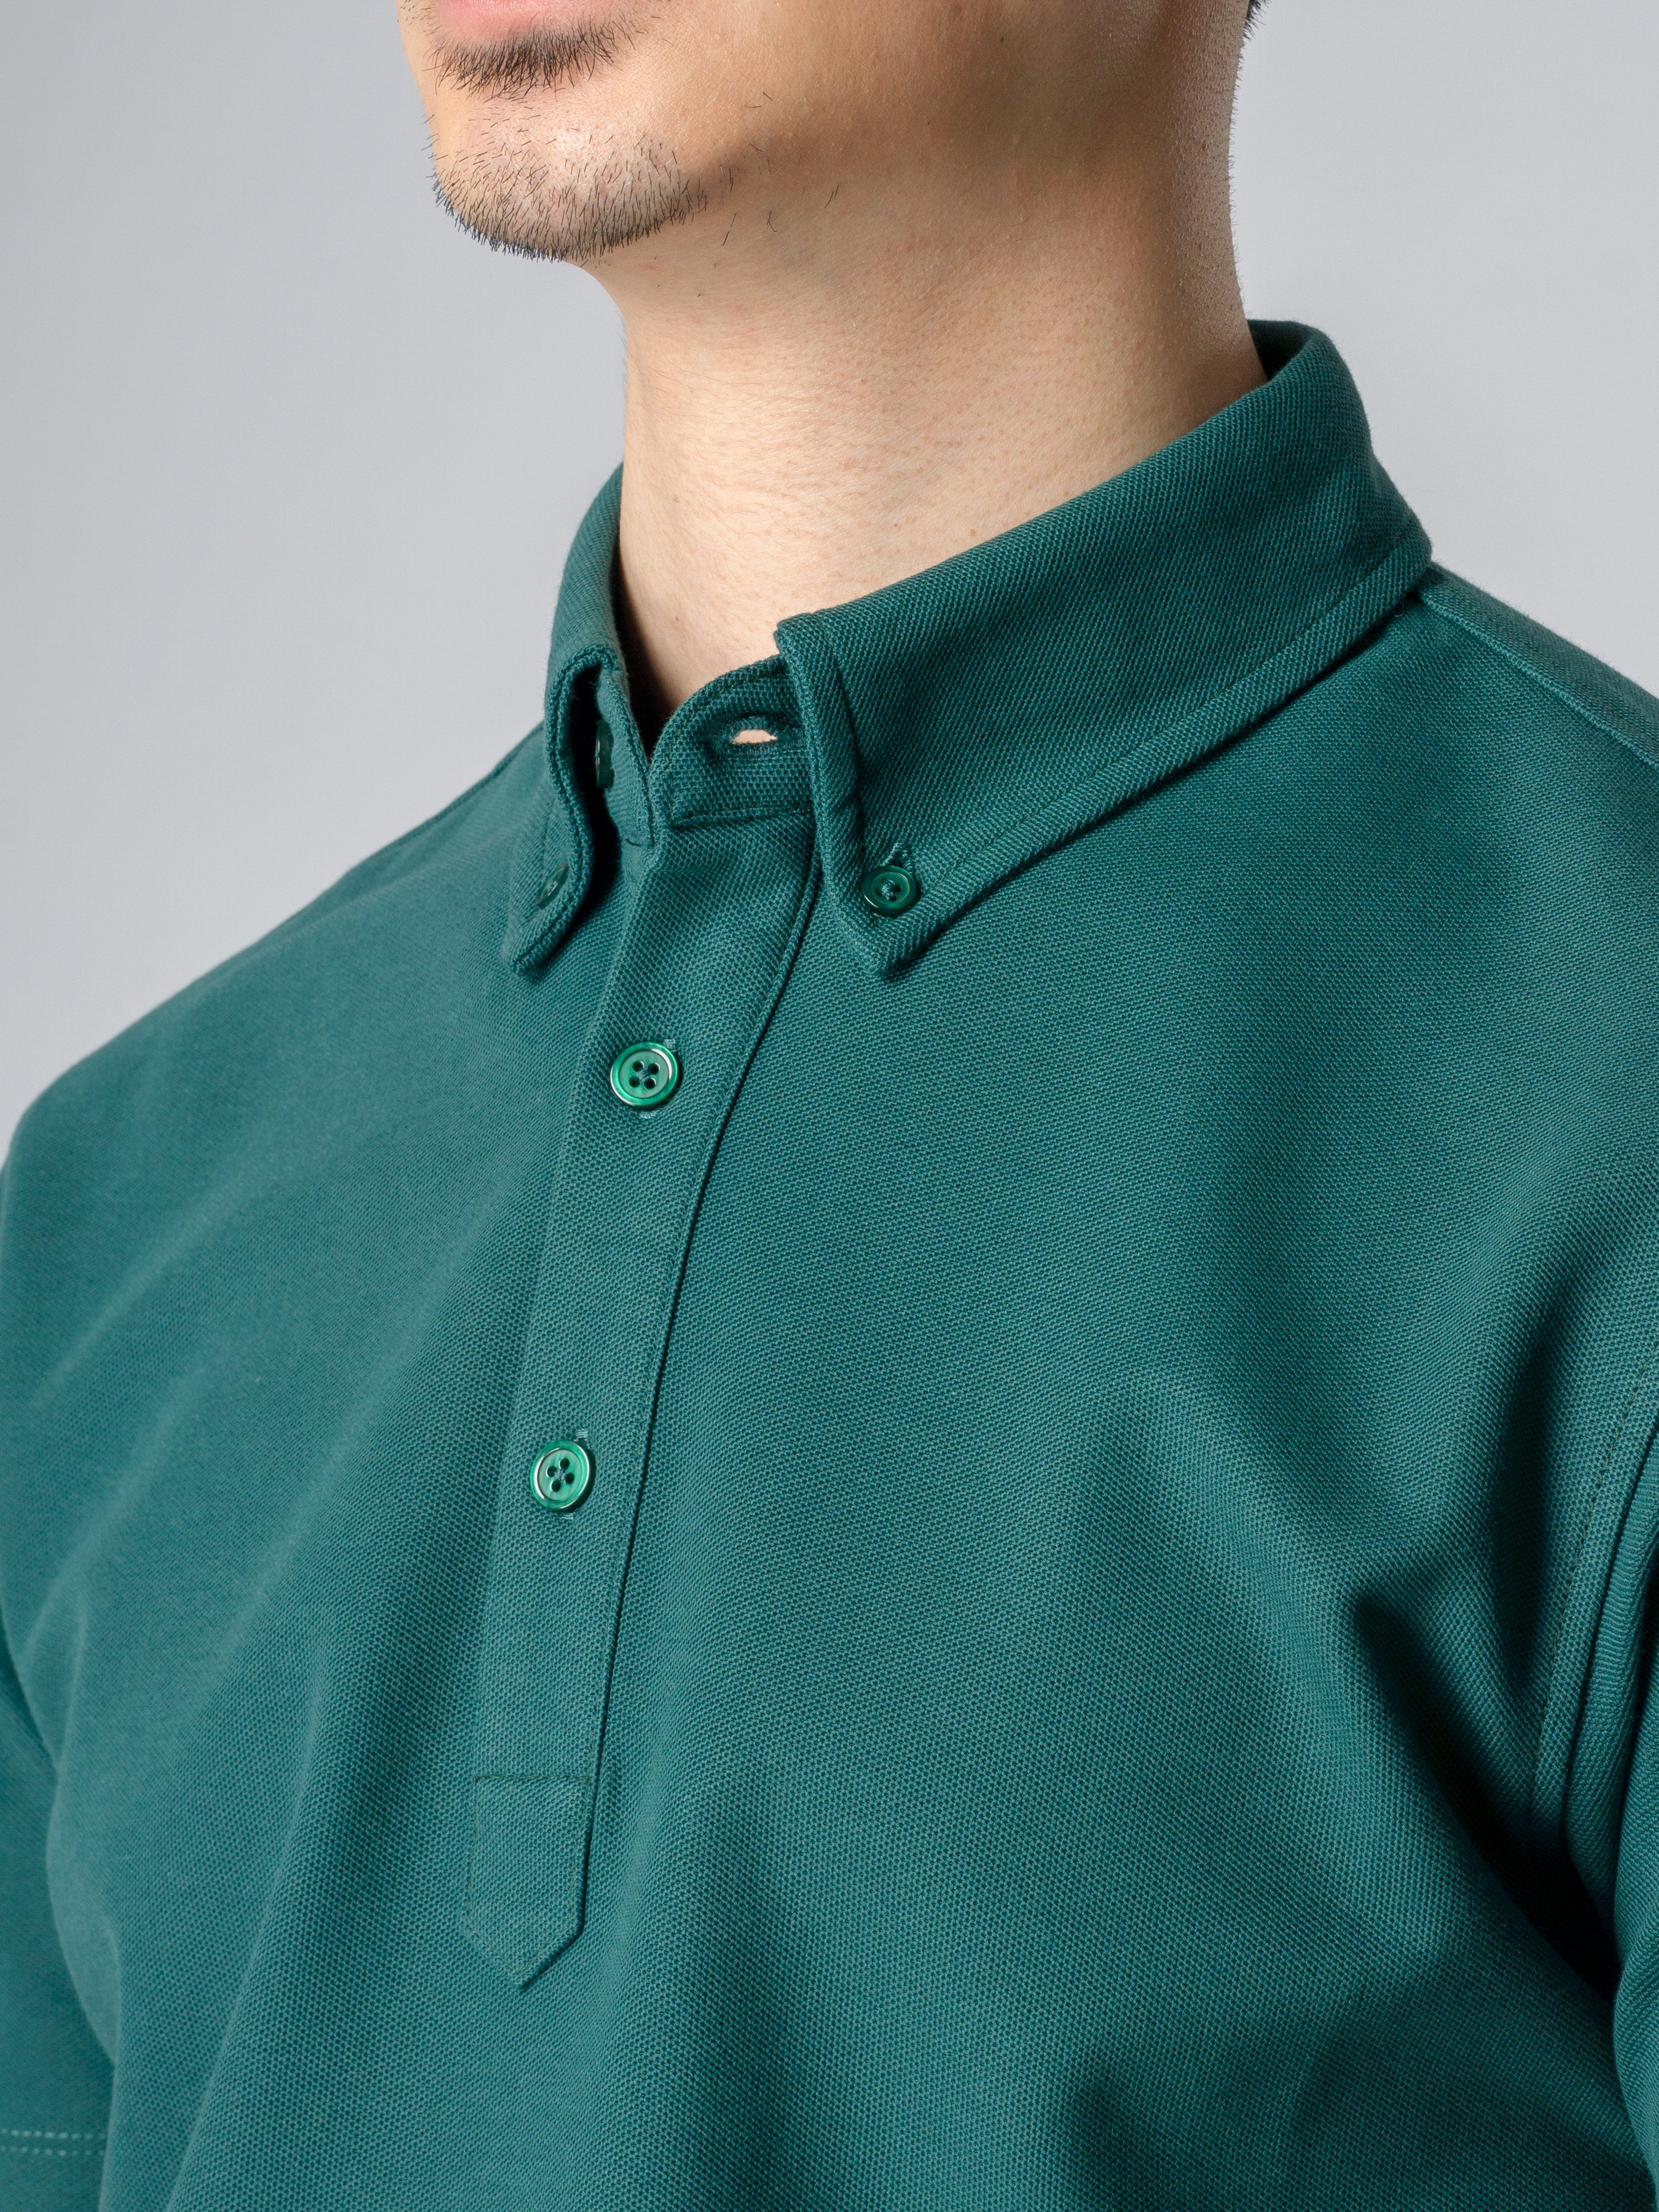 Dante Polo Button Down Short Sleeve - Emerald Green